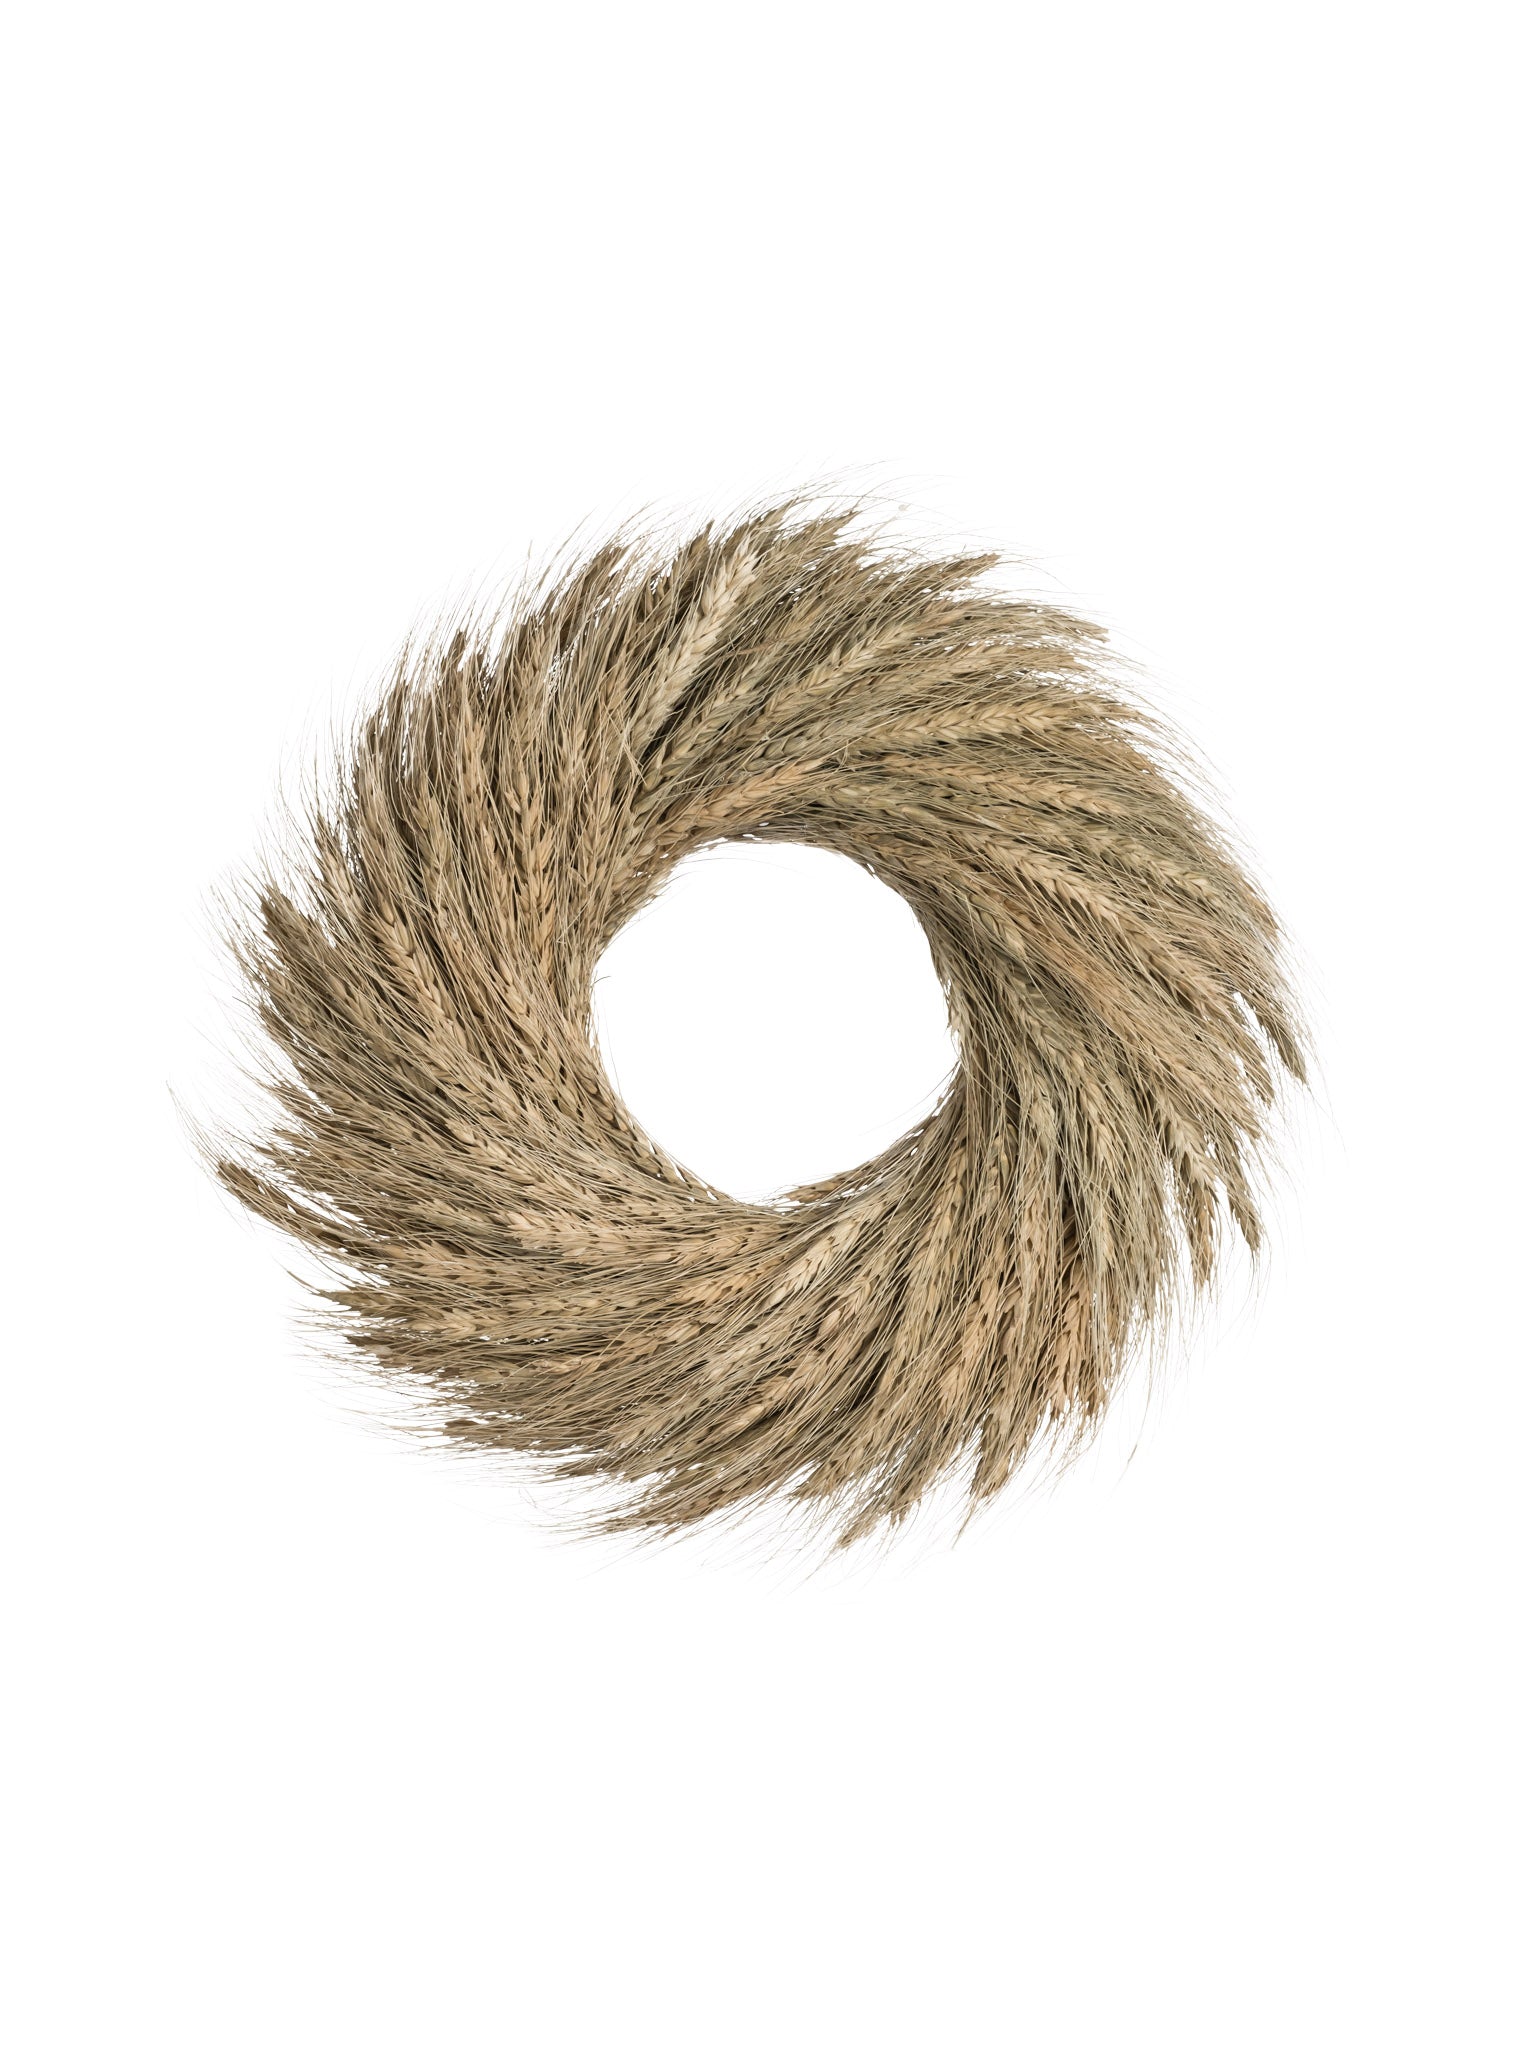 Dried Wheat Wreath